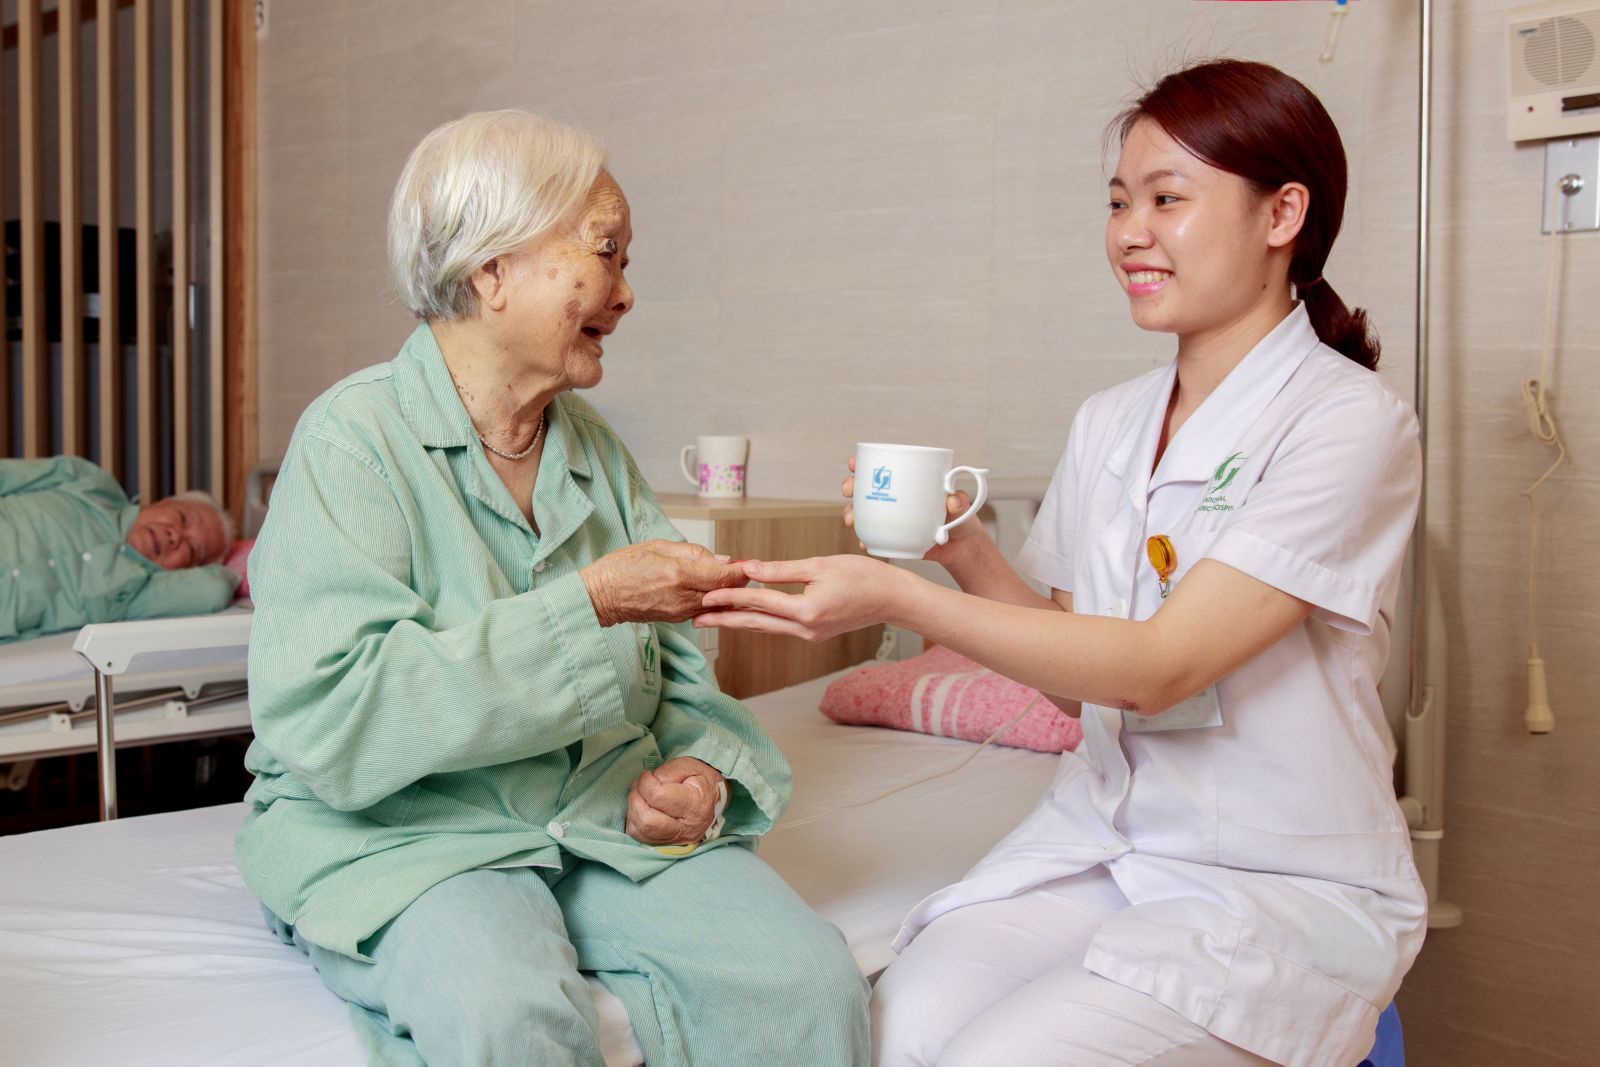 Sử dụng dịch vụ chăm sóc sức khỏe cho người cao tuổi uy tín mang lại nhiều lợi ích